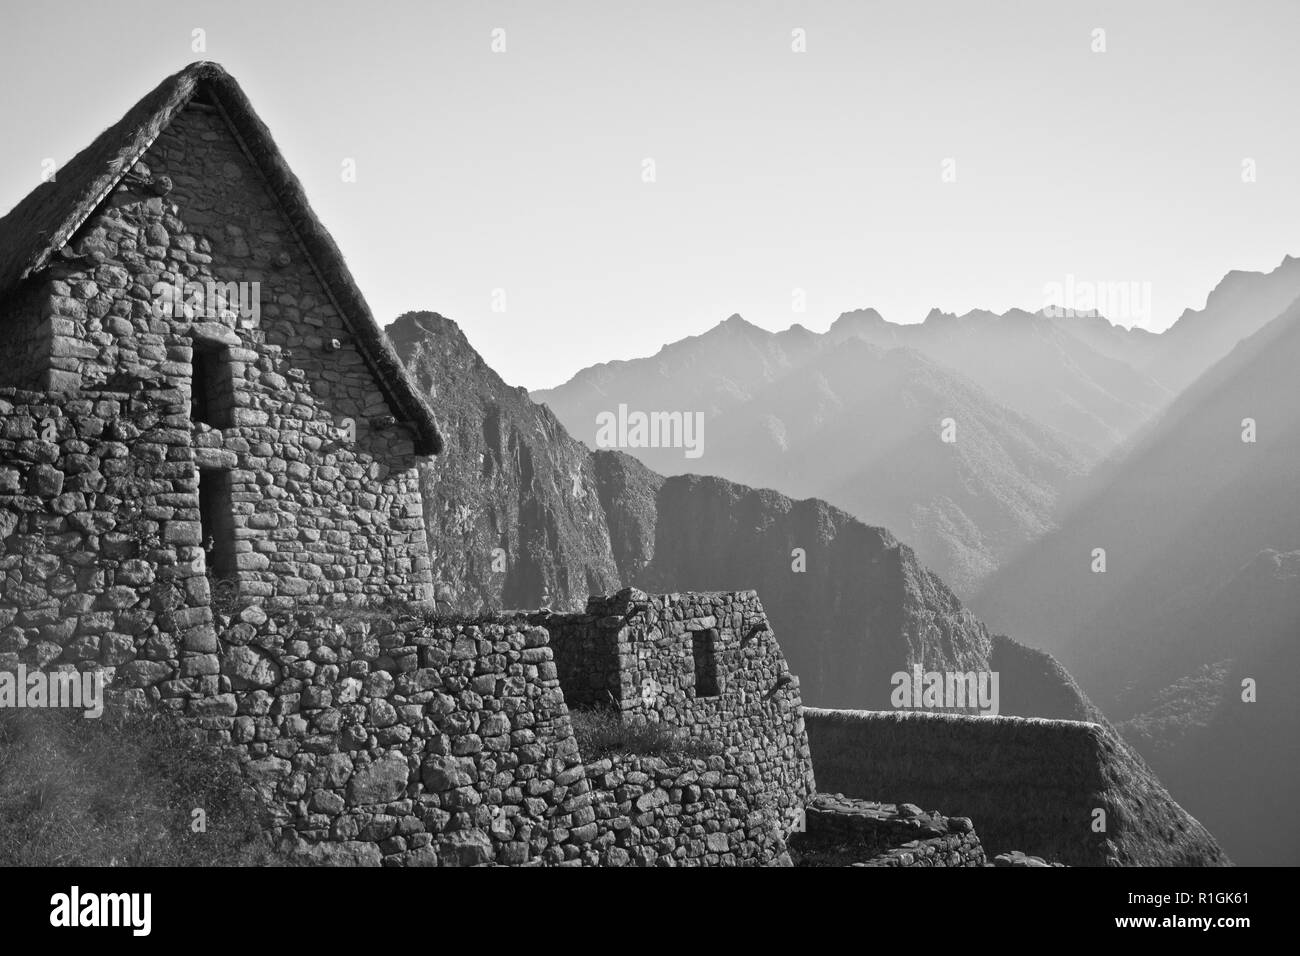 Le Machu Picchu, une citadelle Inca perchée dans les montagnes des Andes, au Pérou, au-dessus de la vallée de la rivière Urubamba. Construit au 15ème siècle et plus tard abandonded Banque D'Images